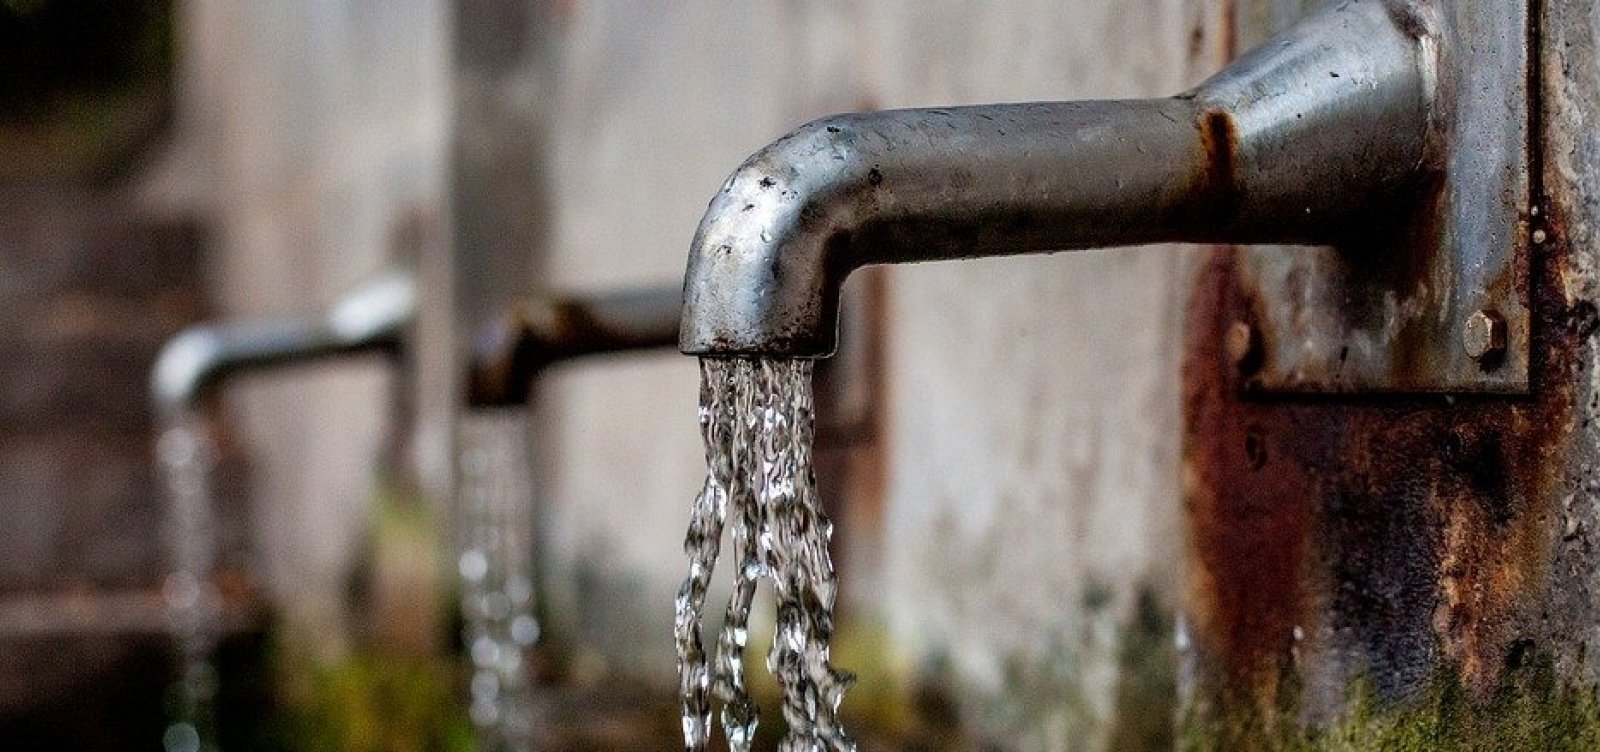 Abastecimento de água será interrompido em 31 localidades de Salvador; veja quais